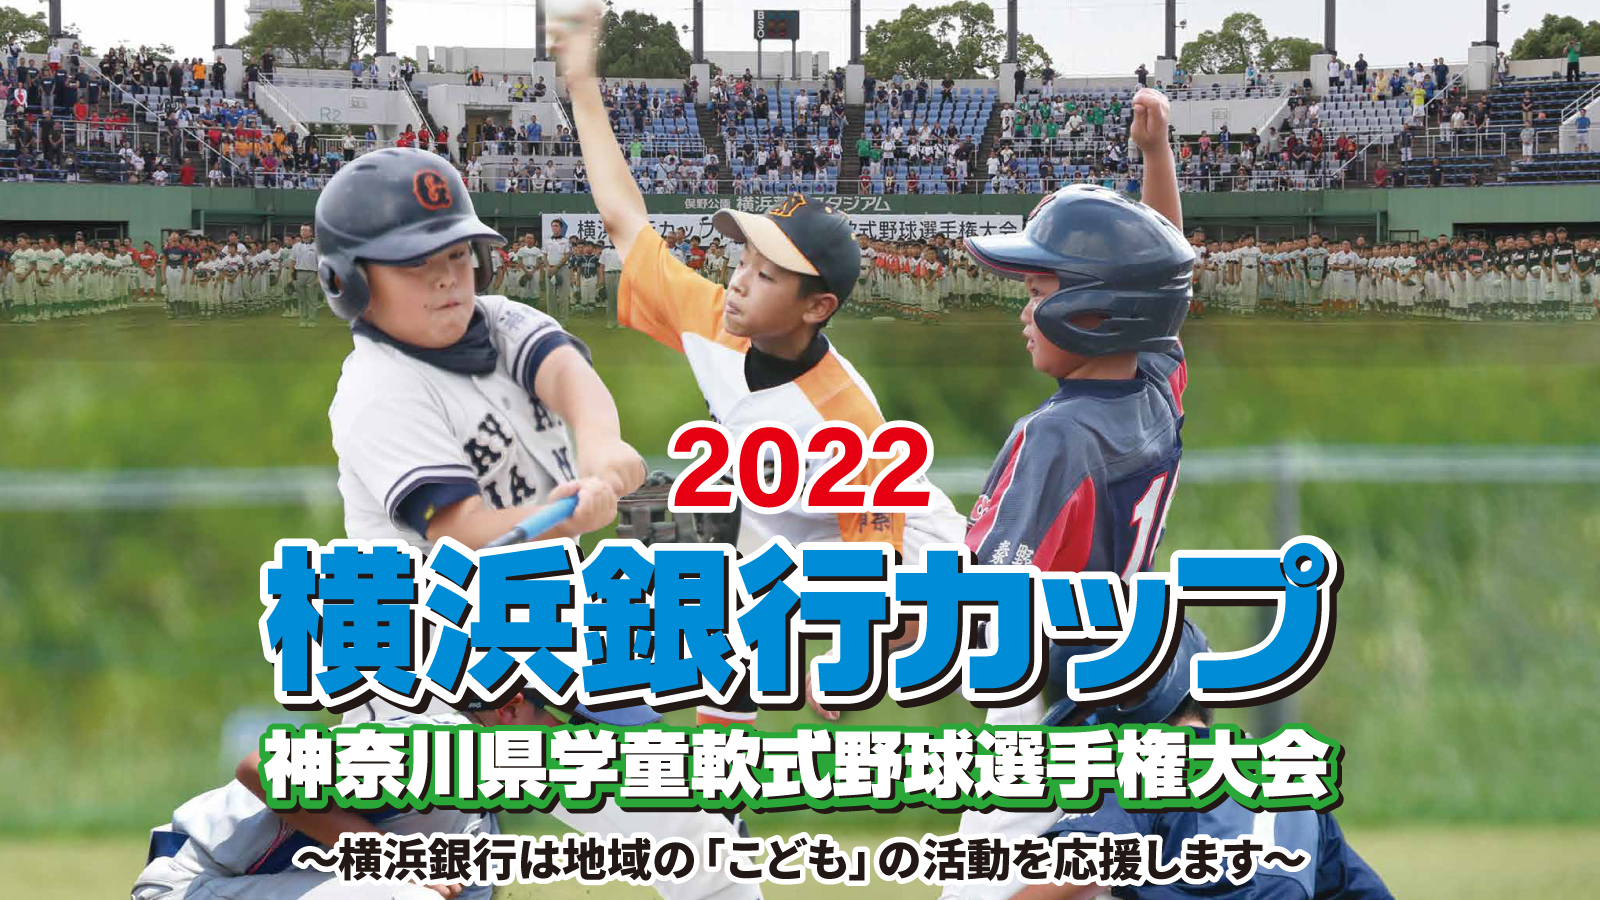 2022 横浜銀行カップ 神奈川県学童軟式野球選手権大会